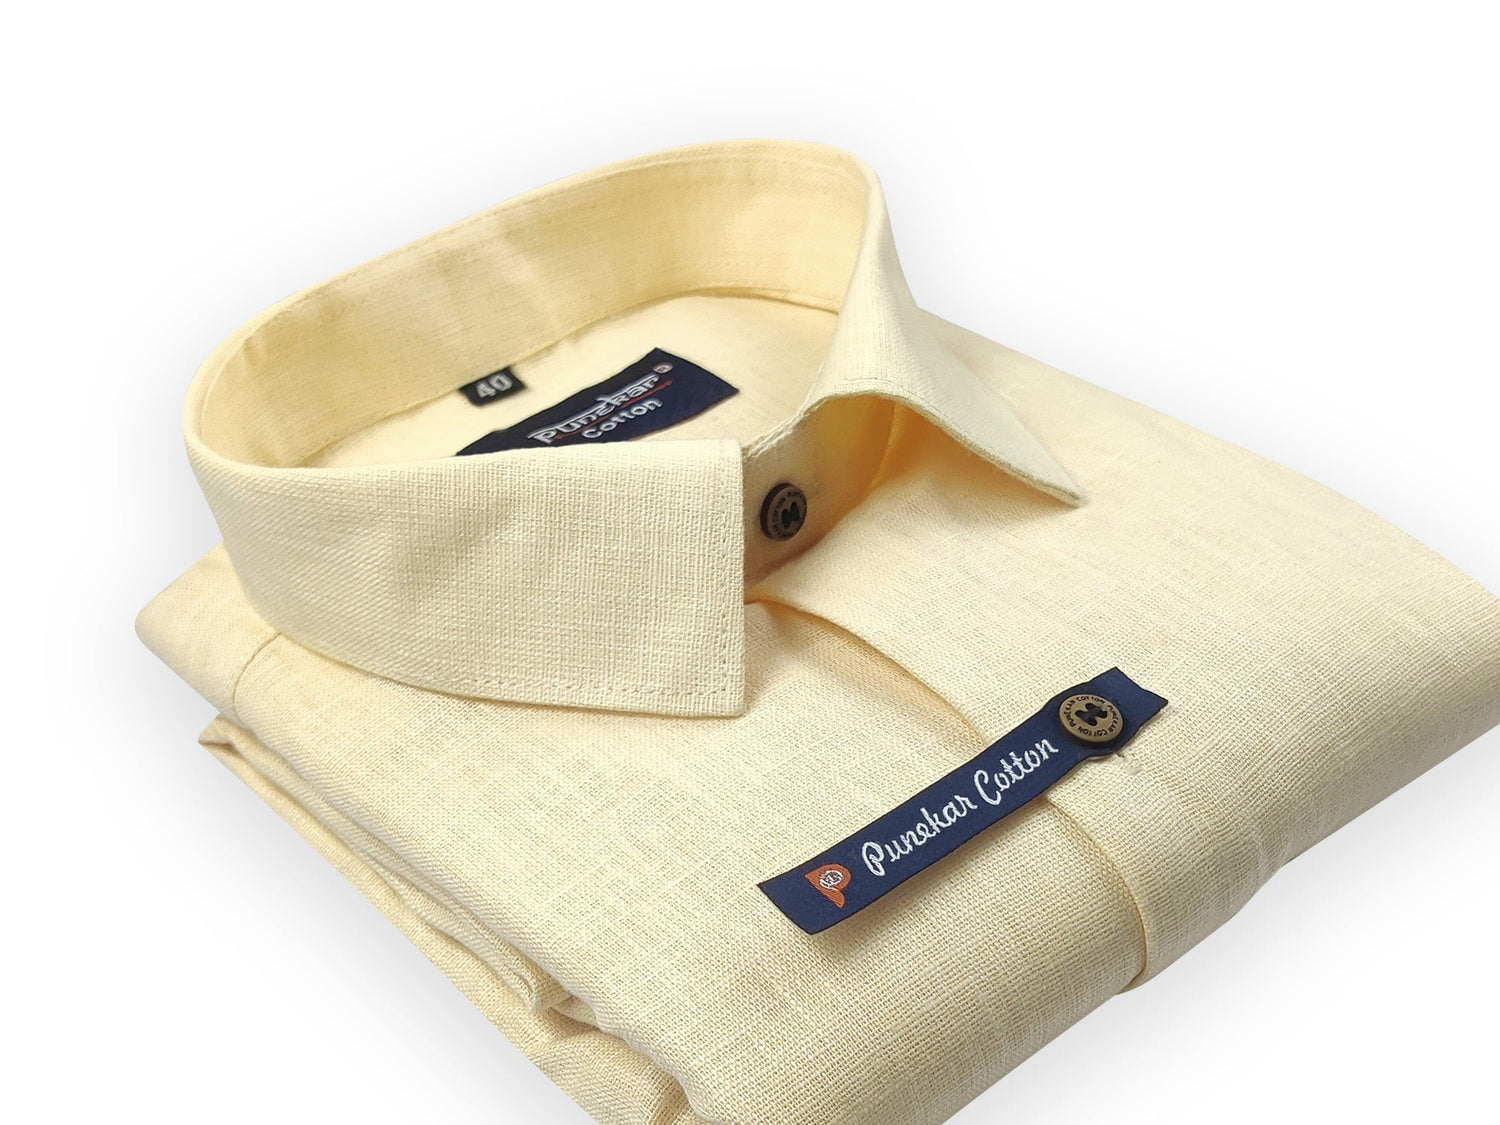 Light Yellow Color Linenza Linen Formal Shirts For Men - Punekar Cotton